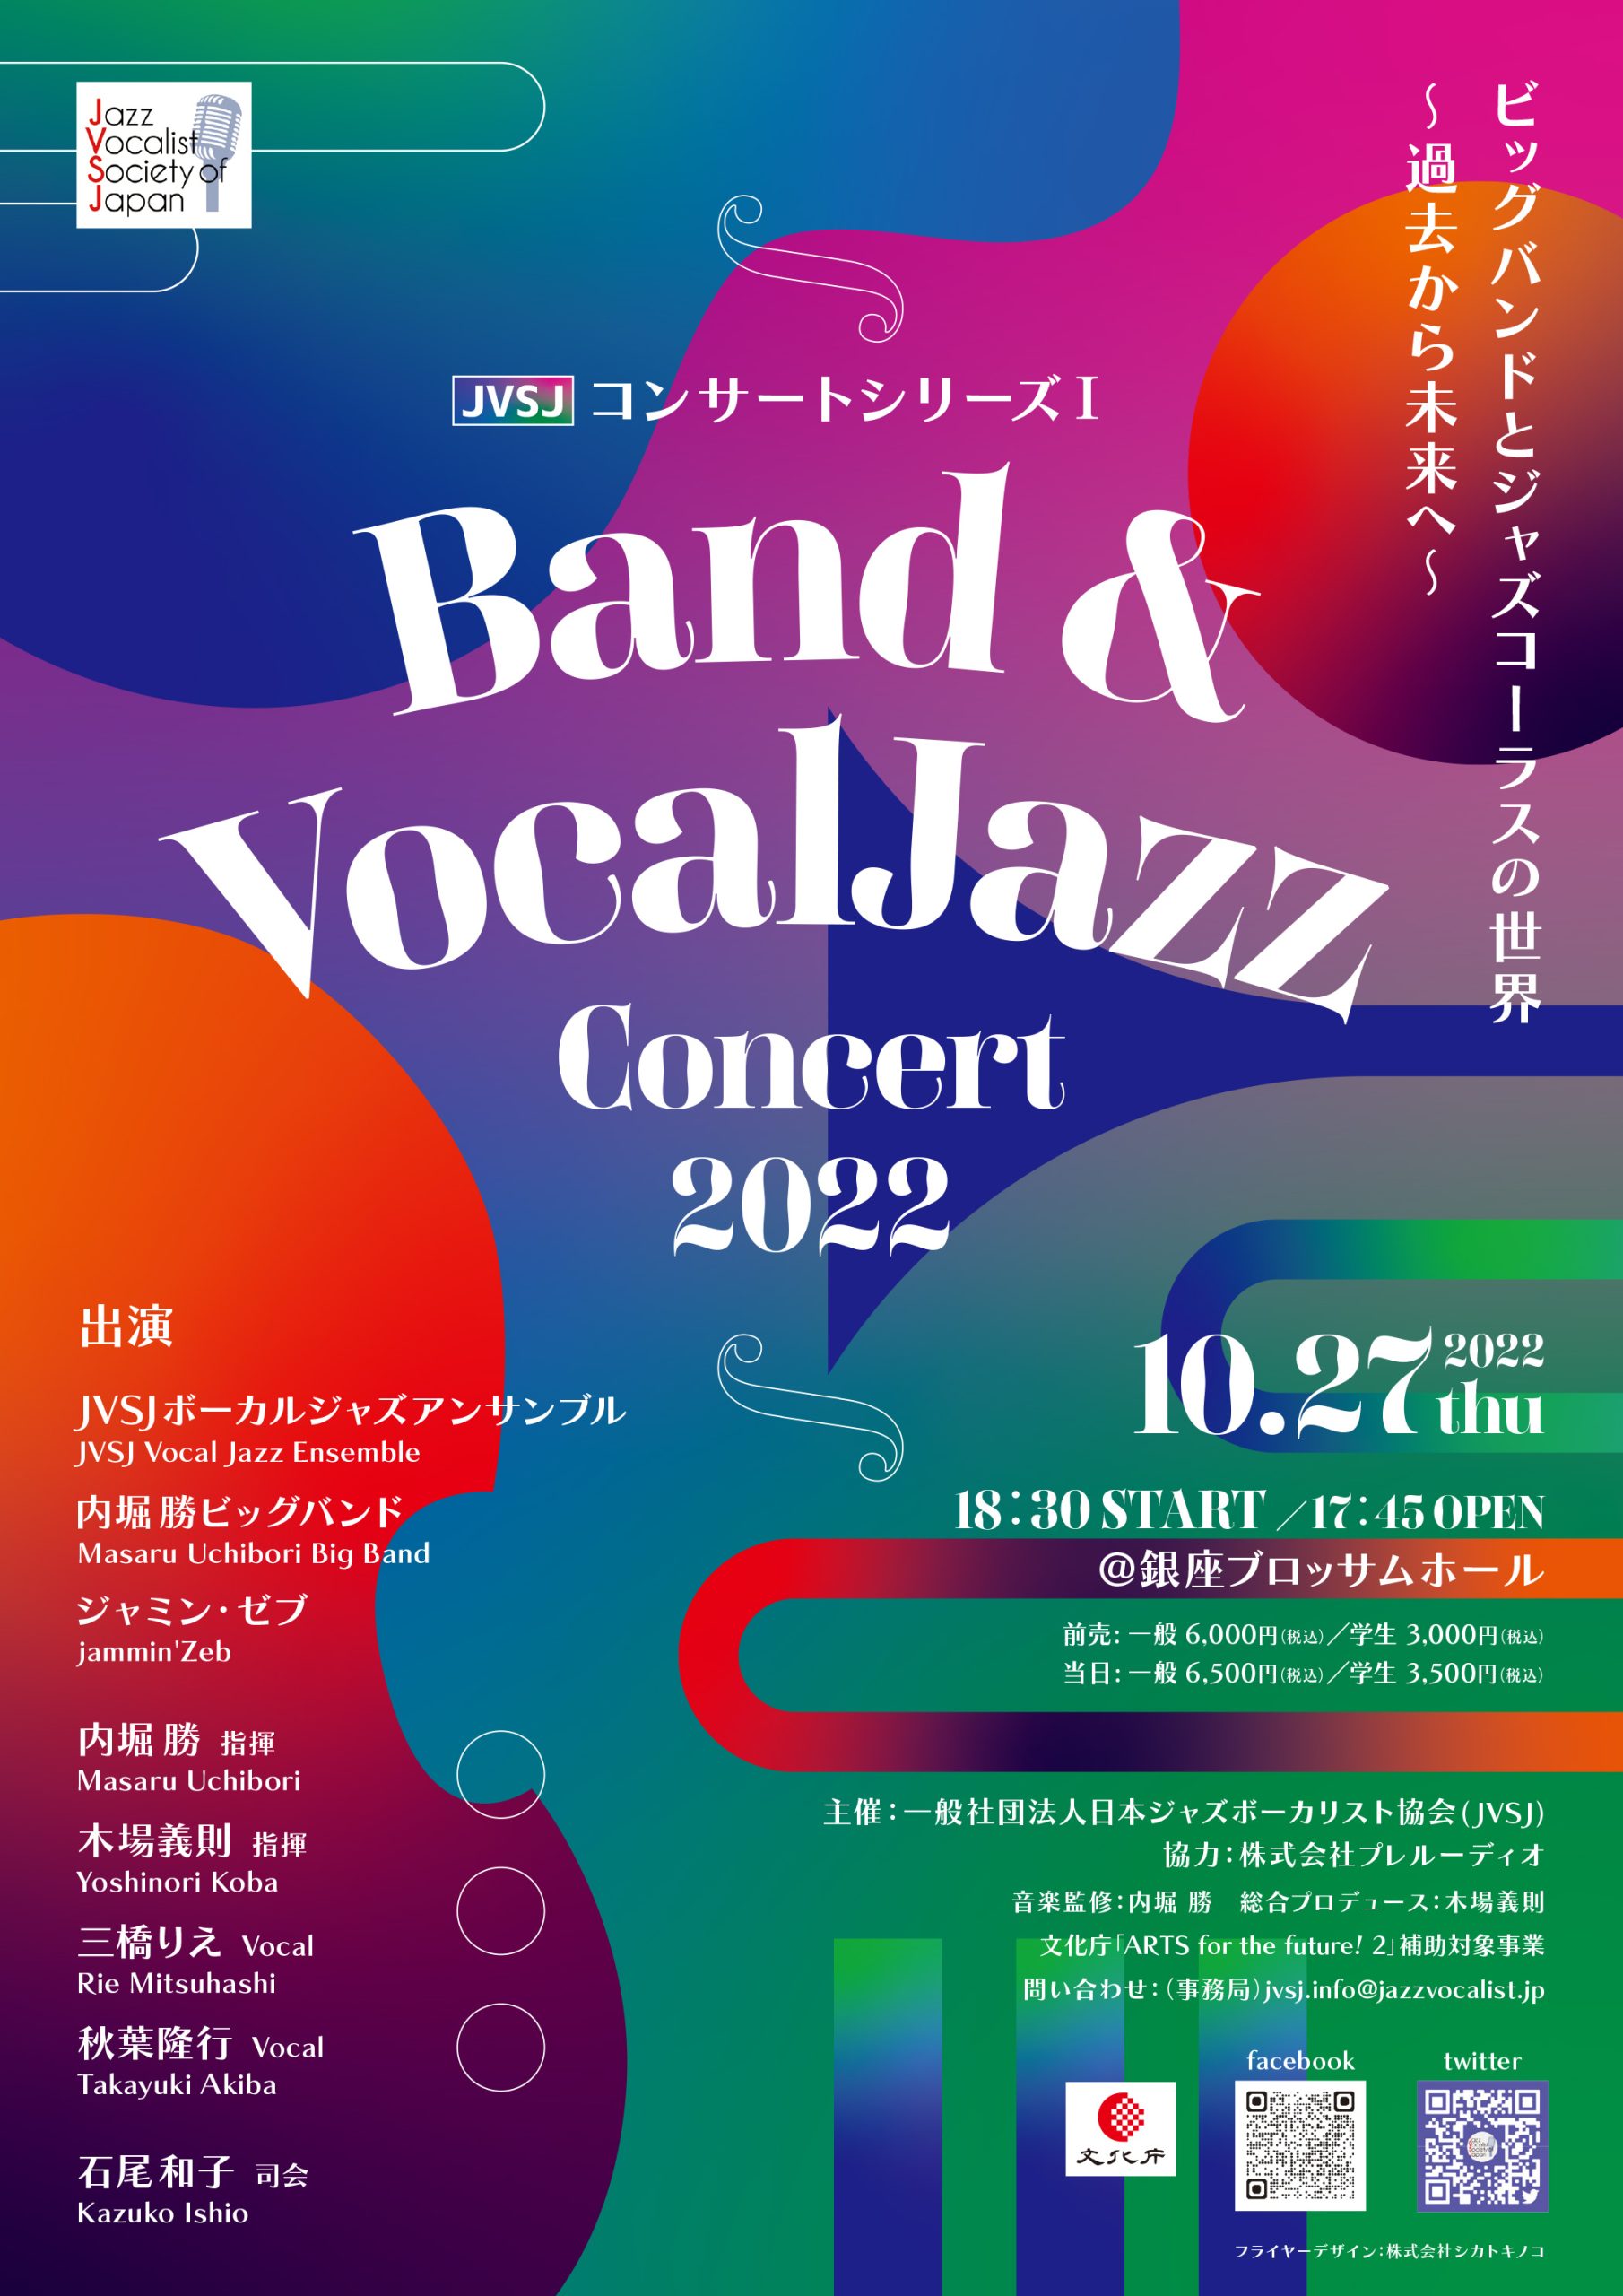 主催コンサートのお知らせ | Jazz Vocalist Society of Japan